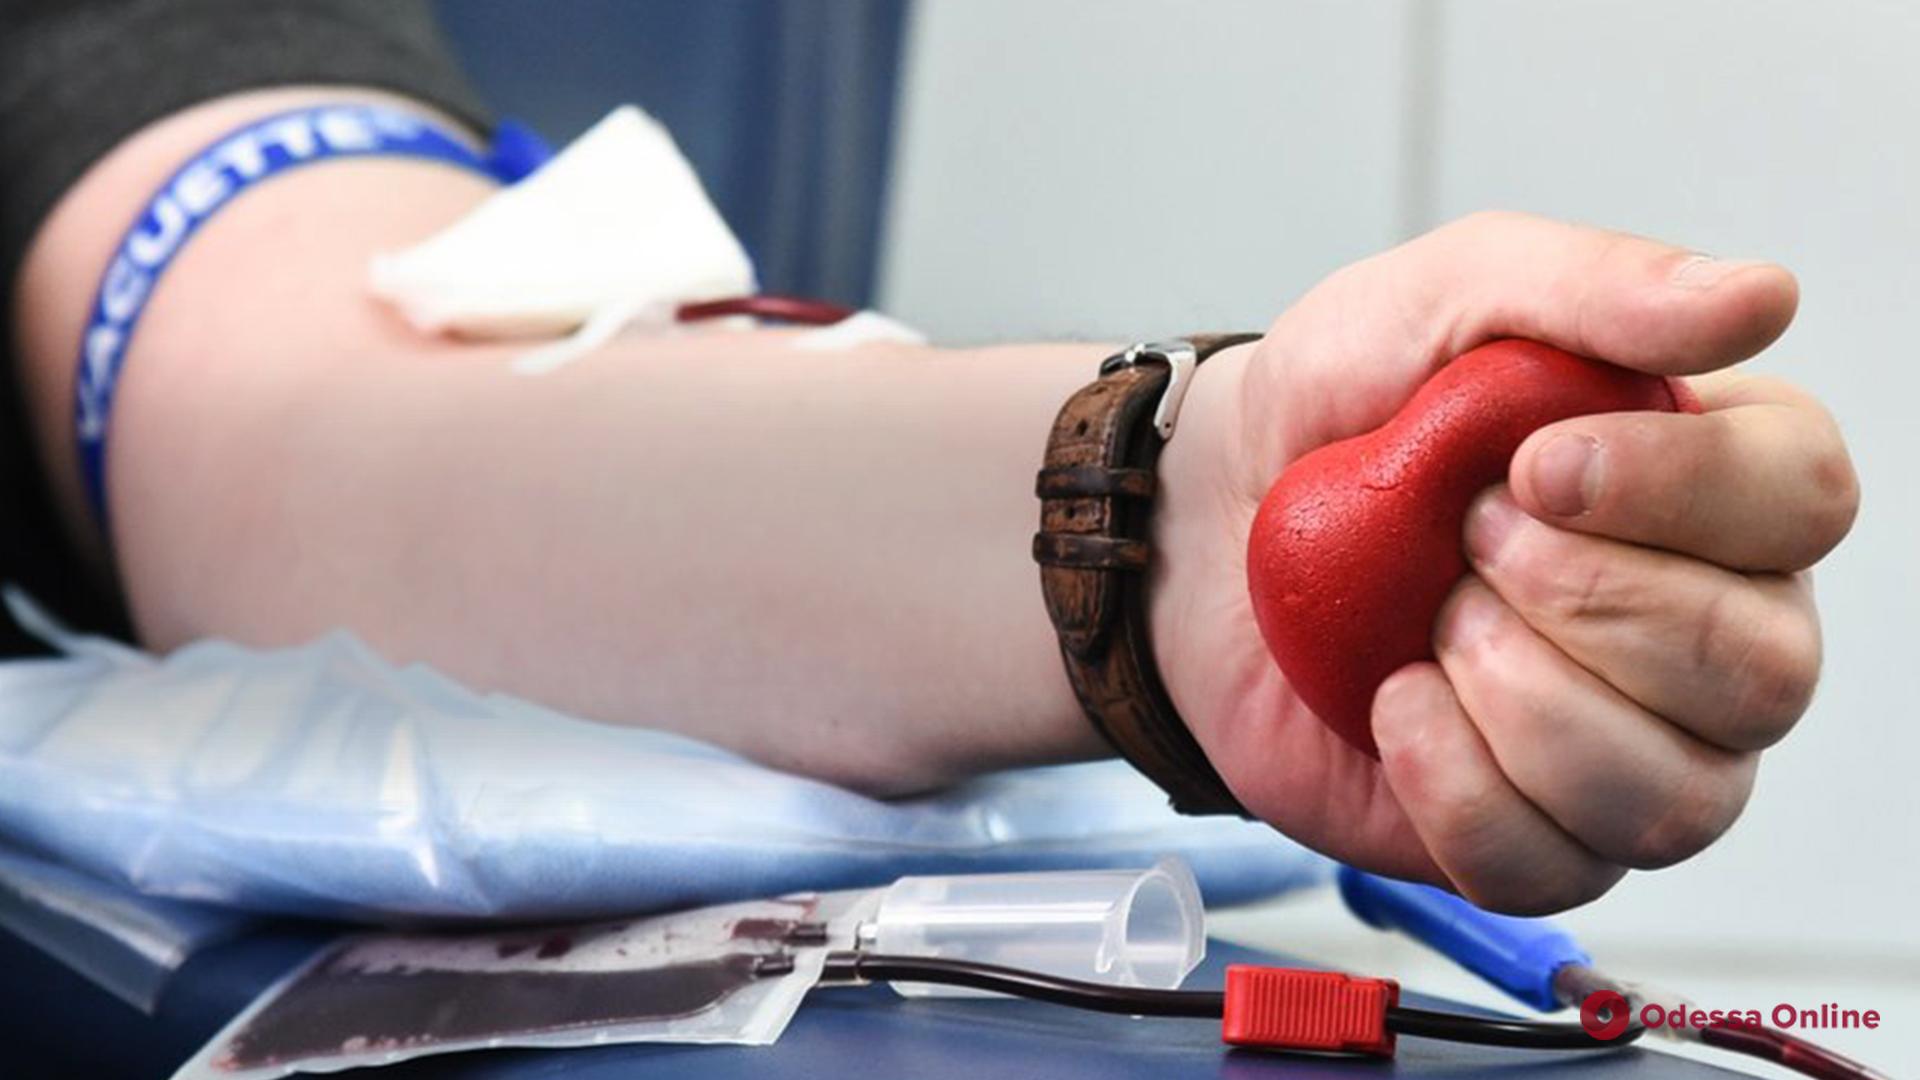 ДонорUA: во всех областях Украины сформированы стратегические запасы крови всех групп и резусов